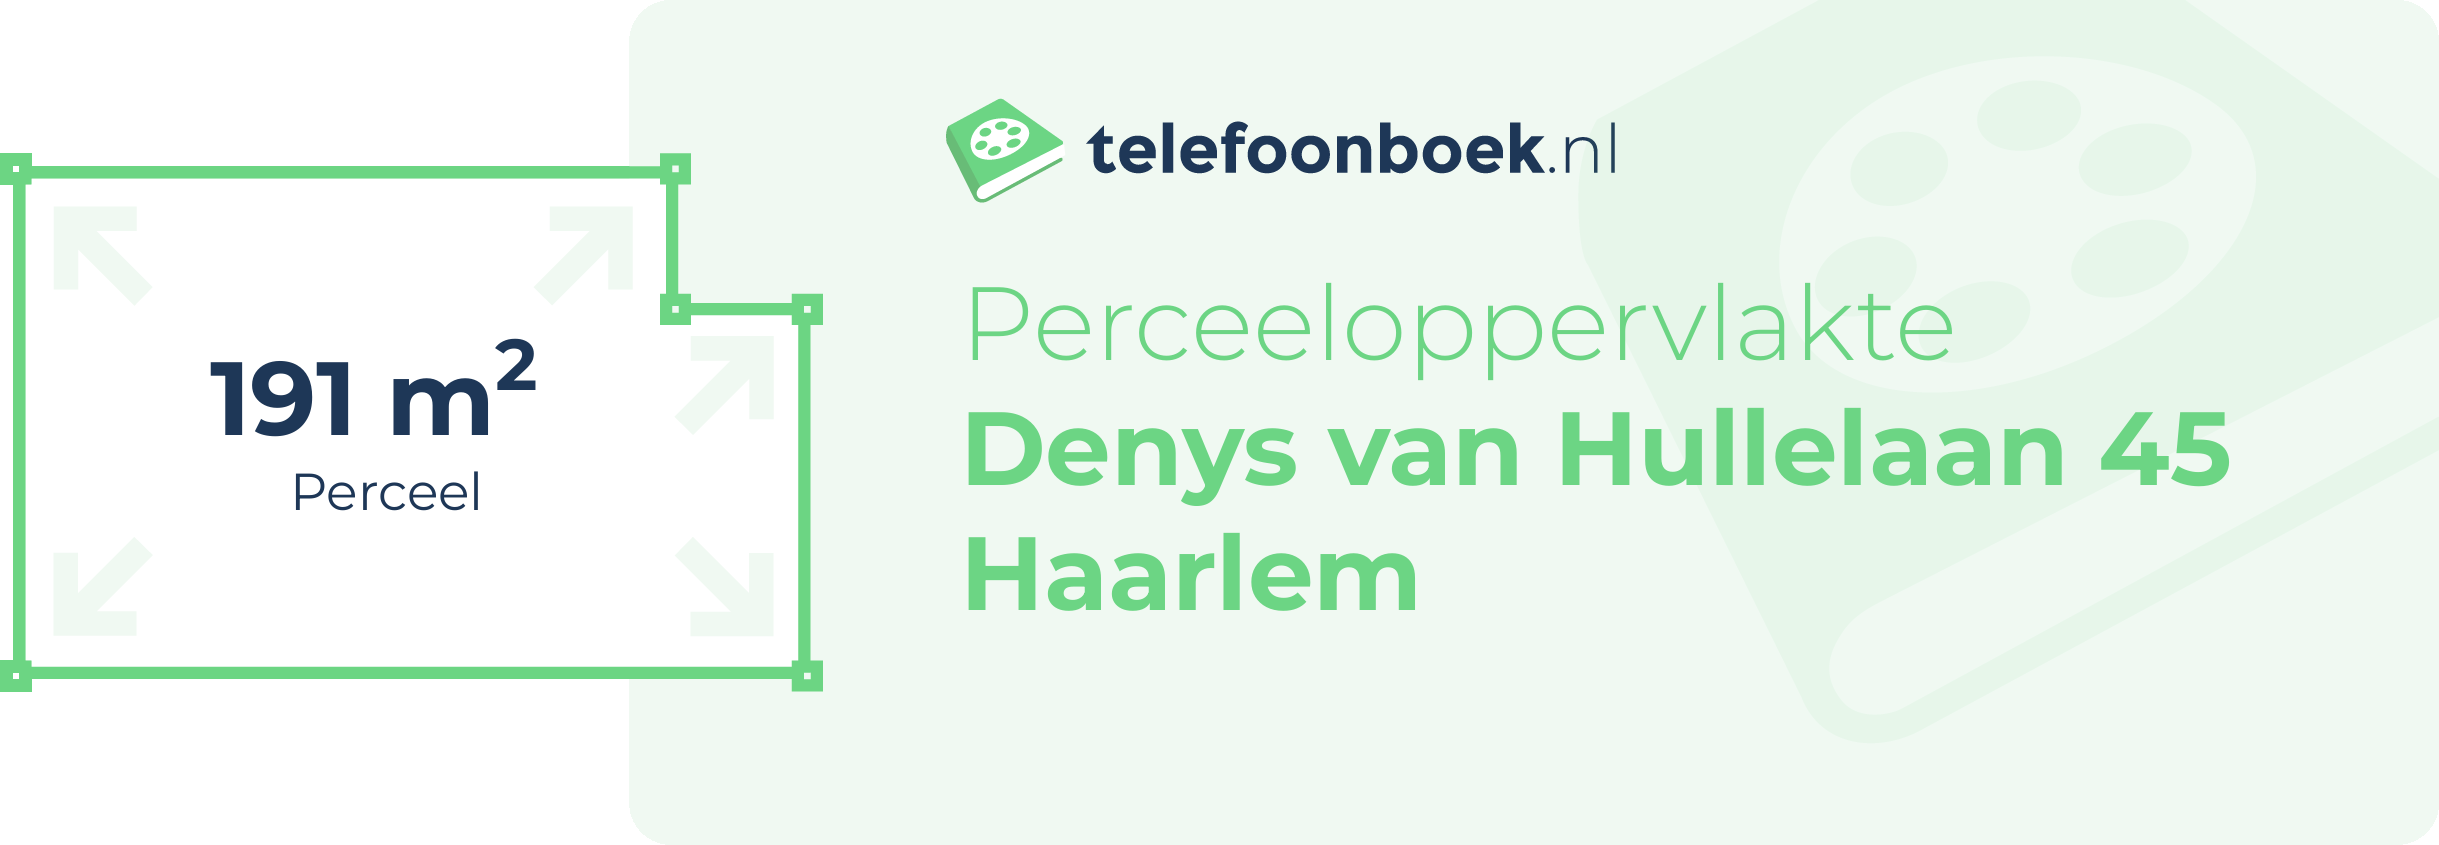 Perceeloppervlakte Denys Van Hullelaan 45 Haarlem